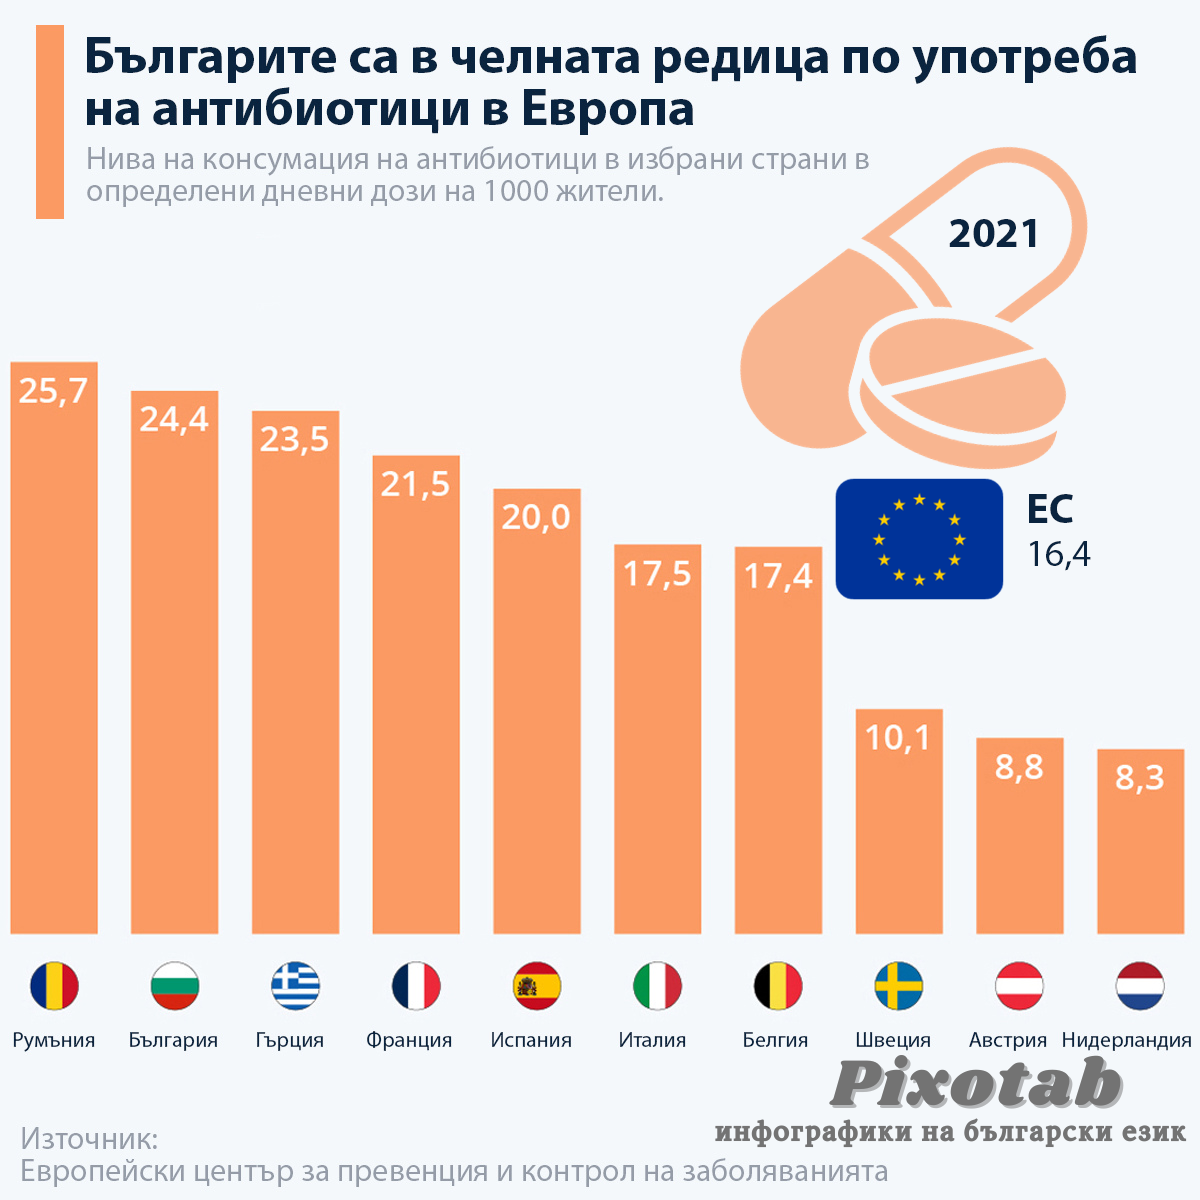 Българите са в челната редица по употреба на антибиотици в Европа